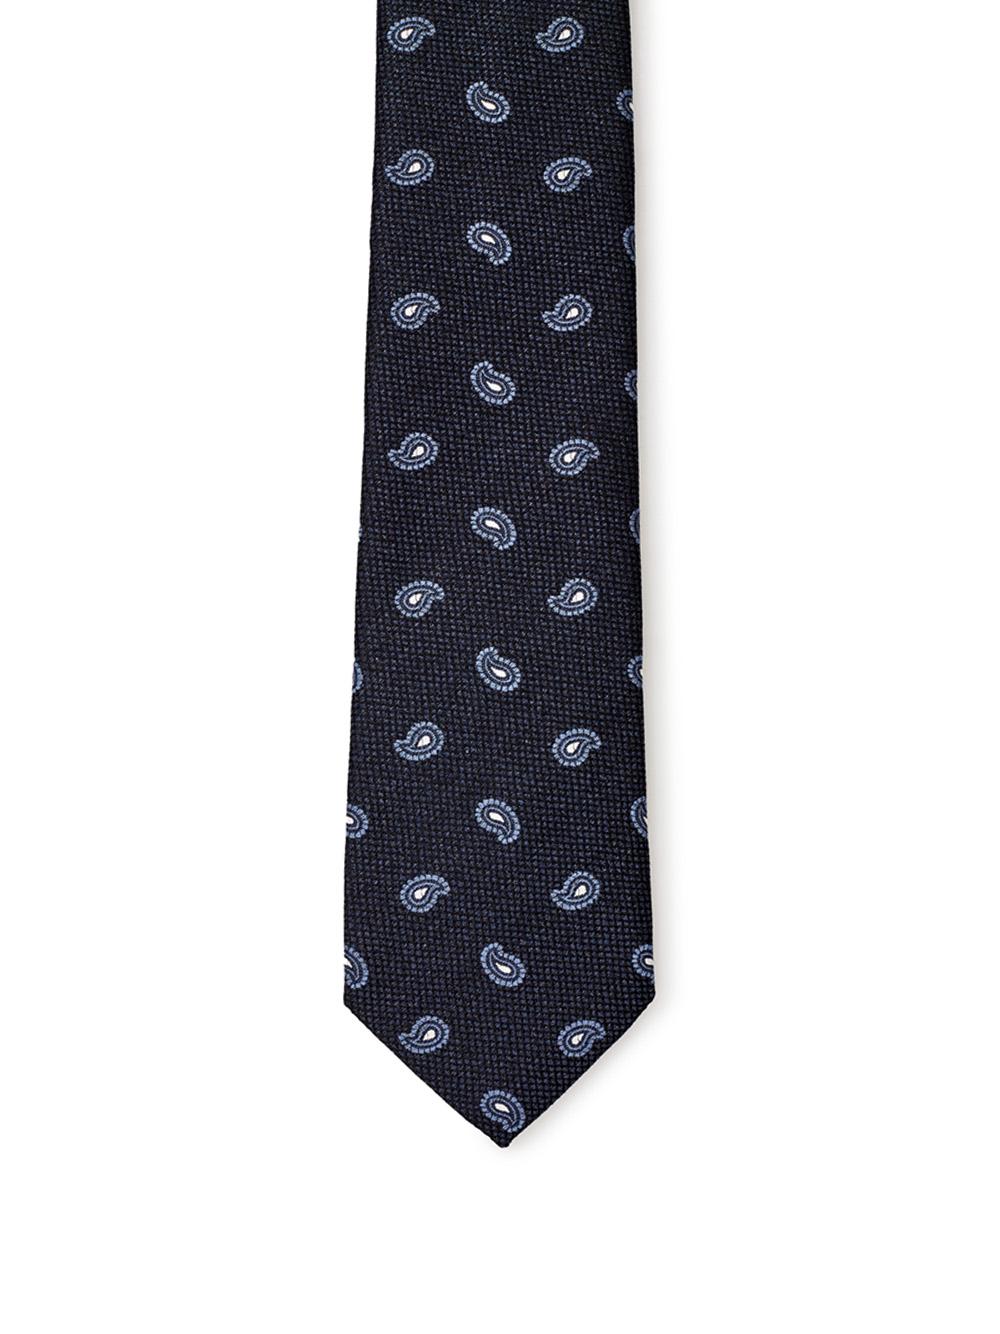 Blu Silk Tie with Print